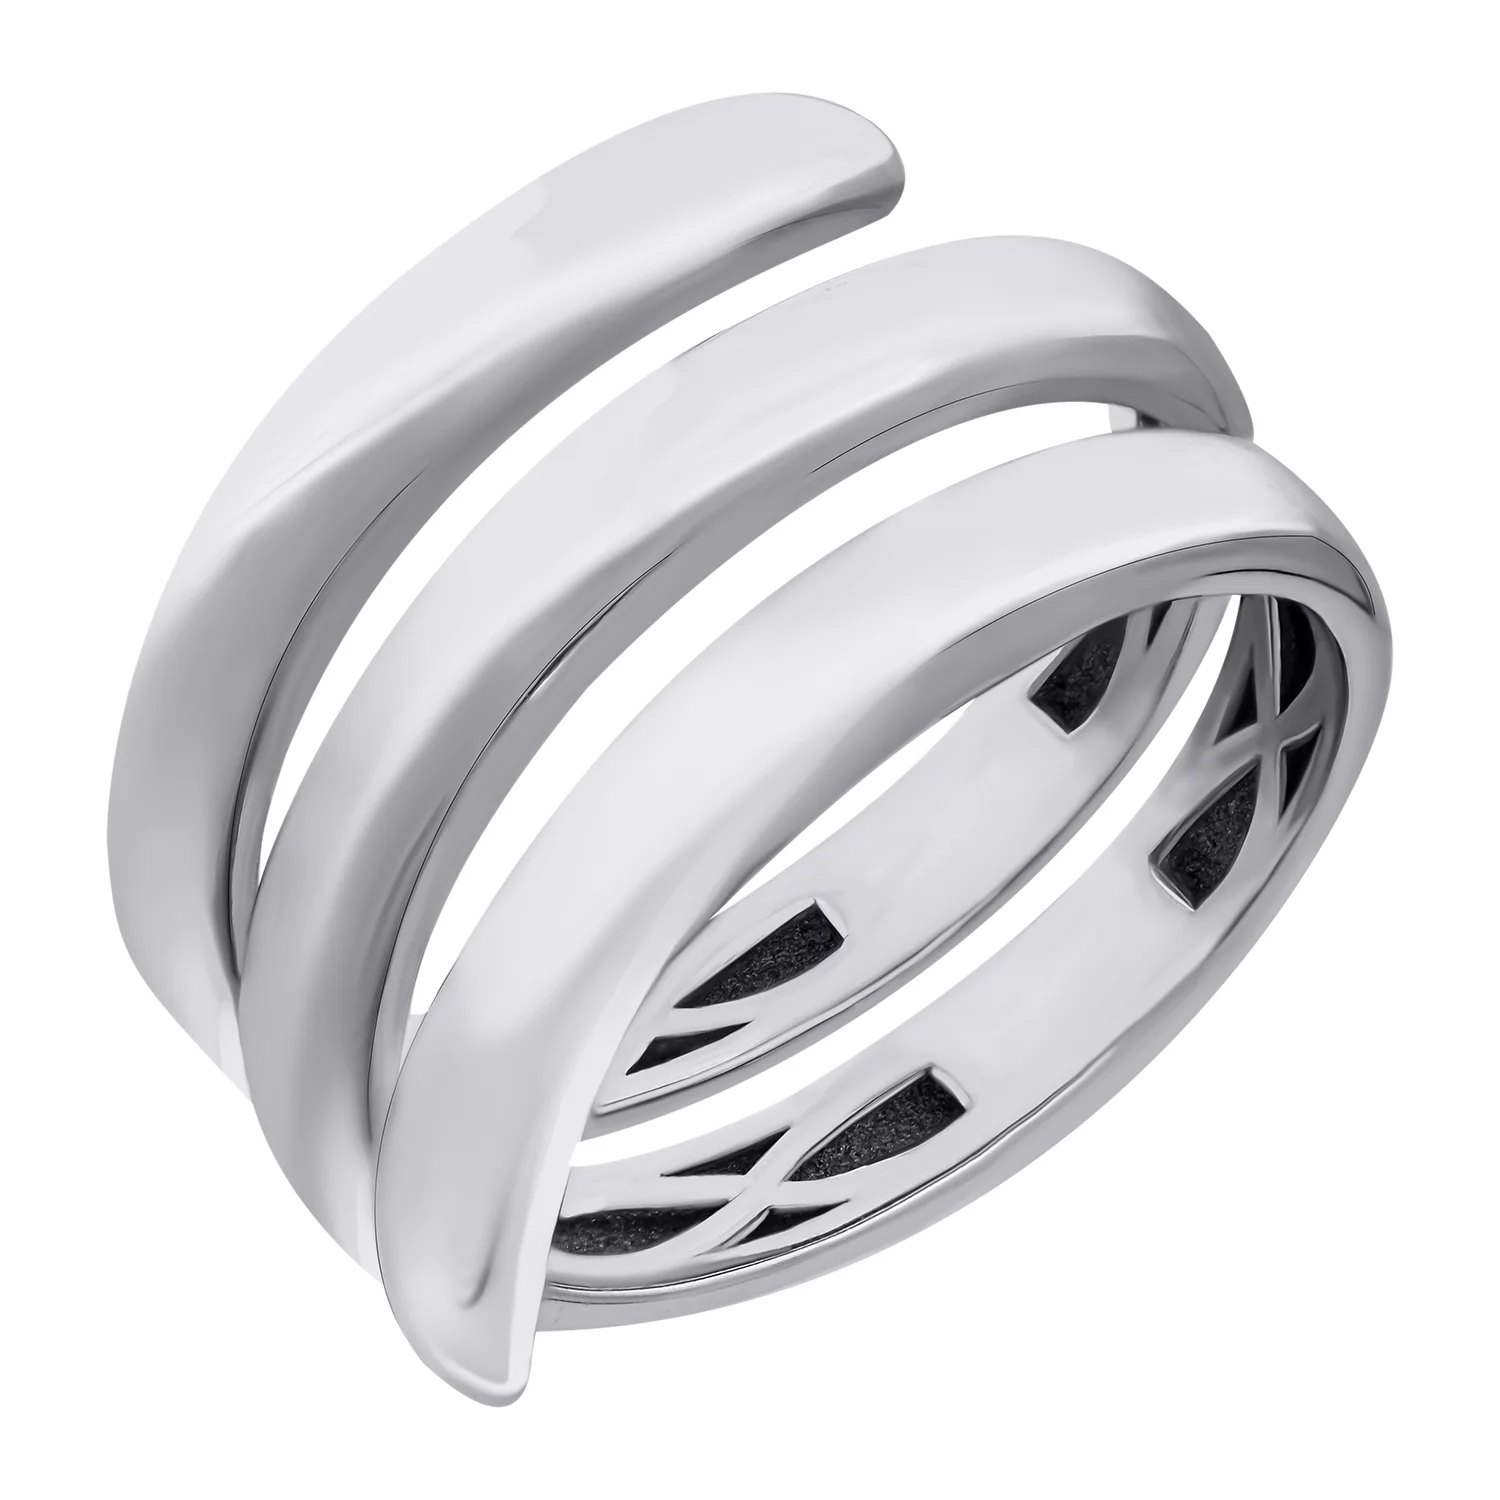 Кольцо серебряное с платиновым покрытием Спираль. Артикул 7501/500770-Пл: цена, отзывы, фото – купить в интернет-магазине AURUM